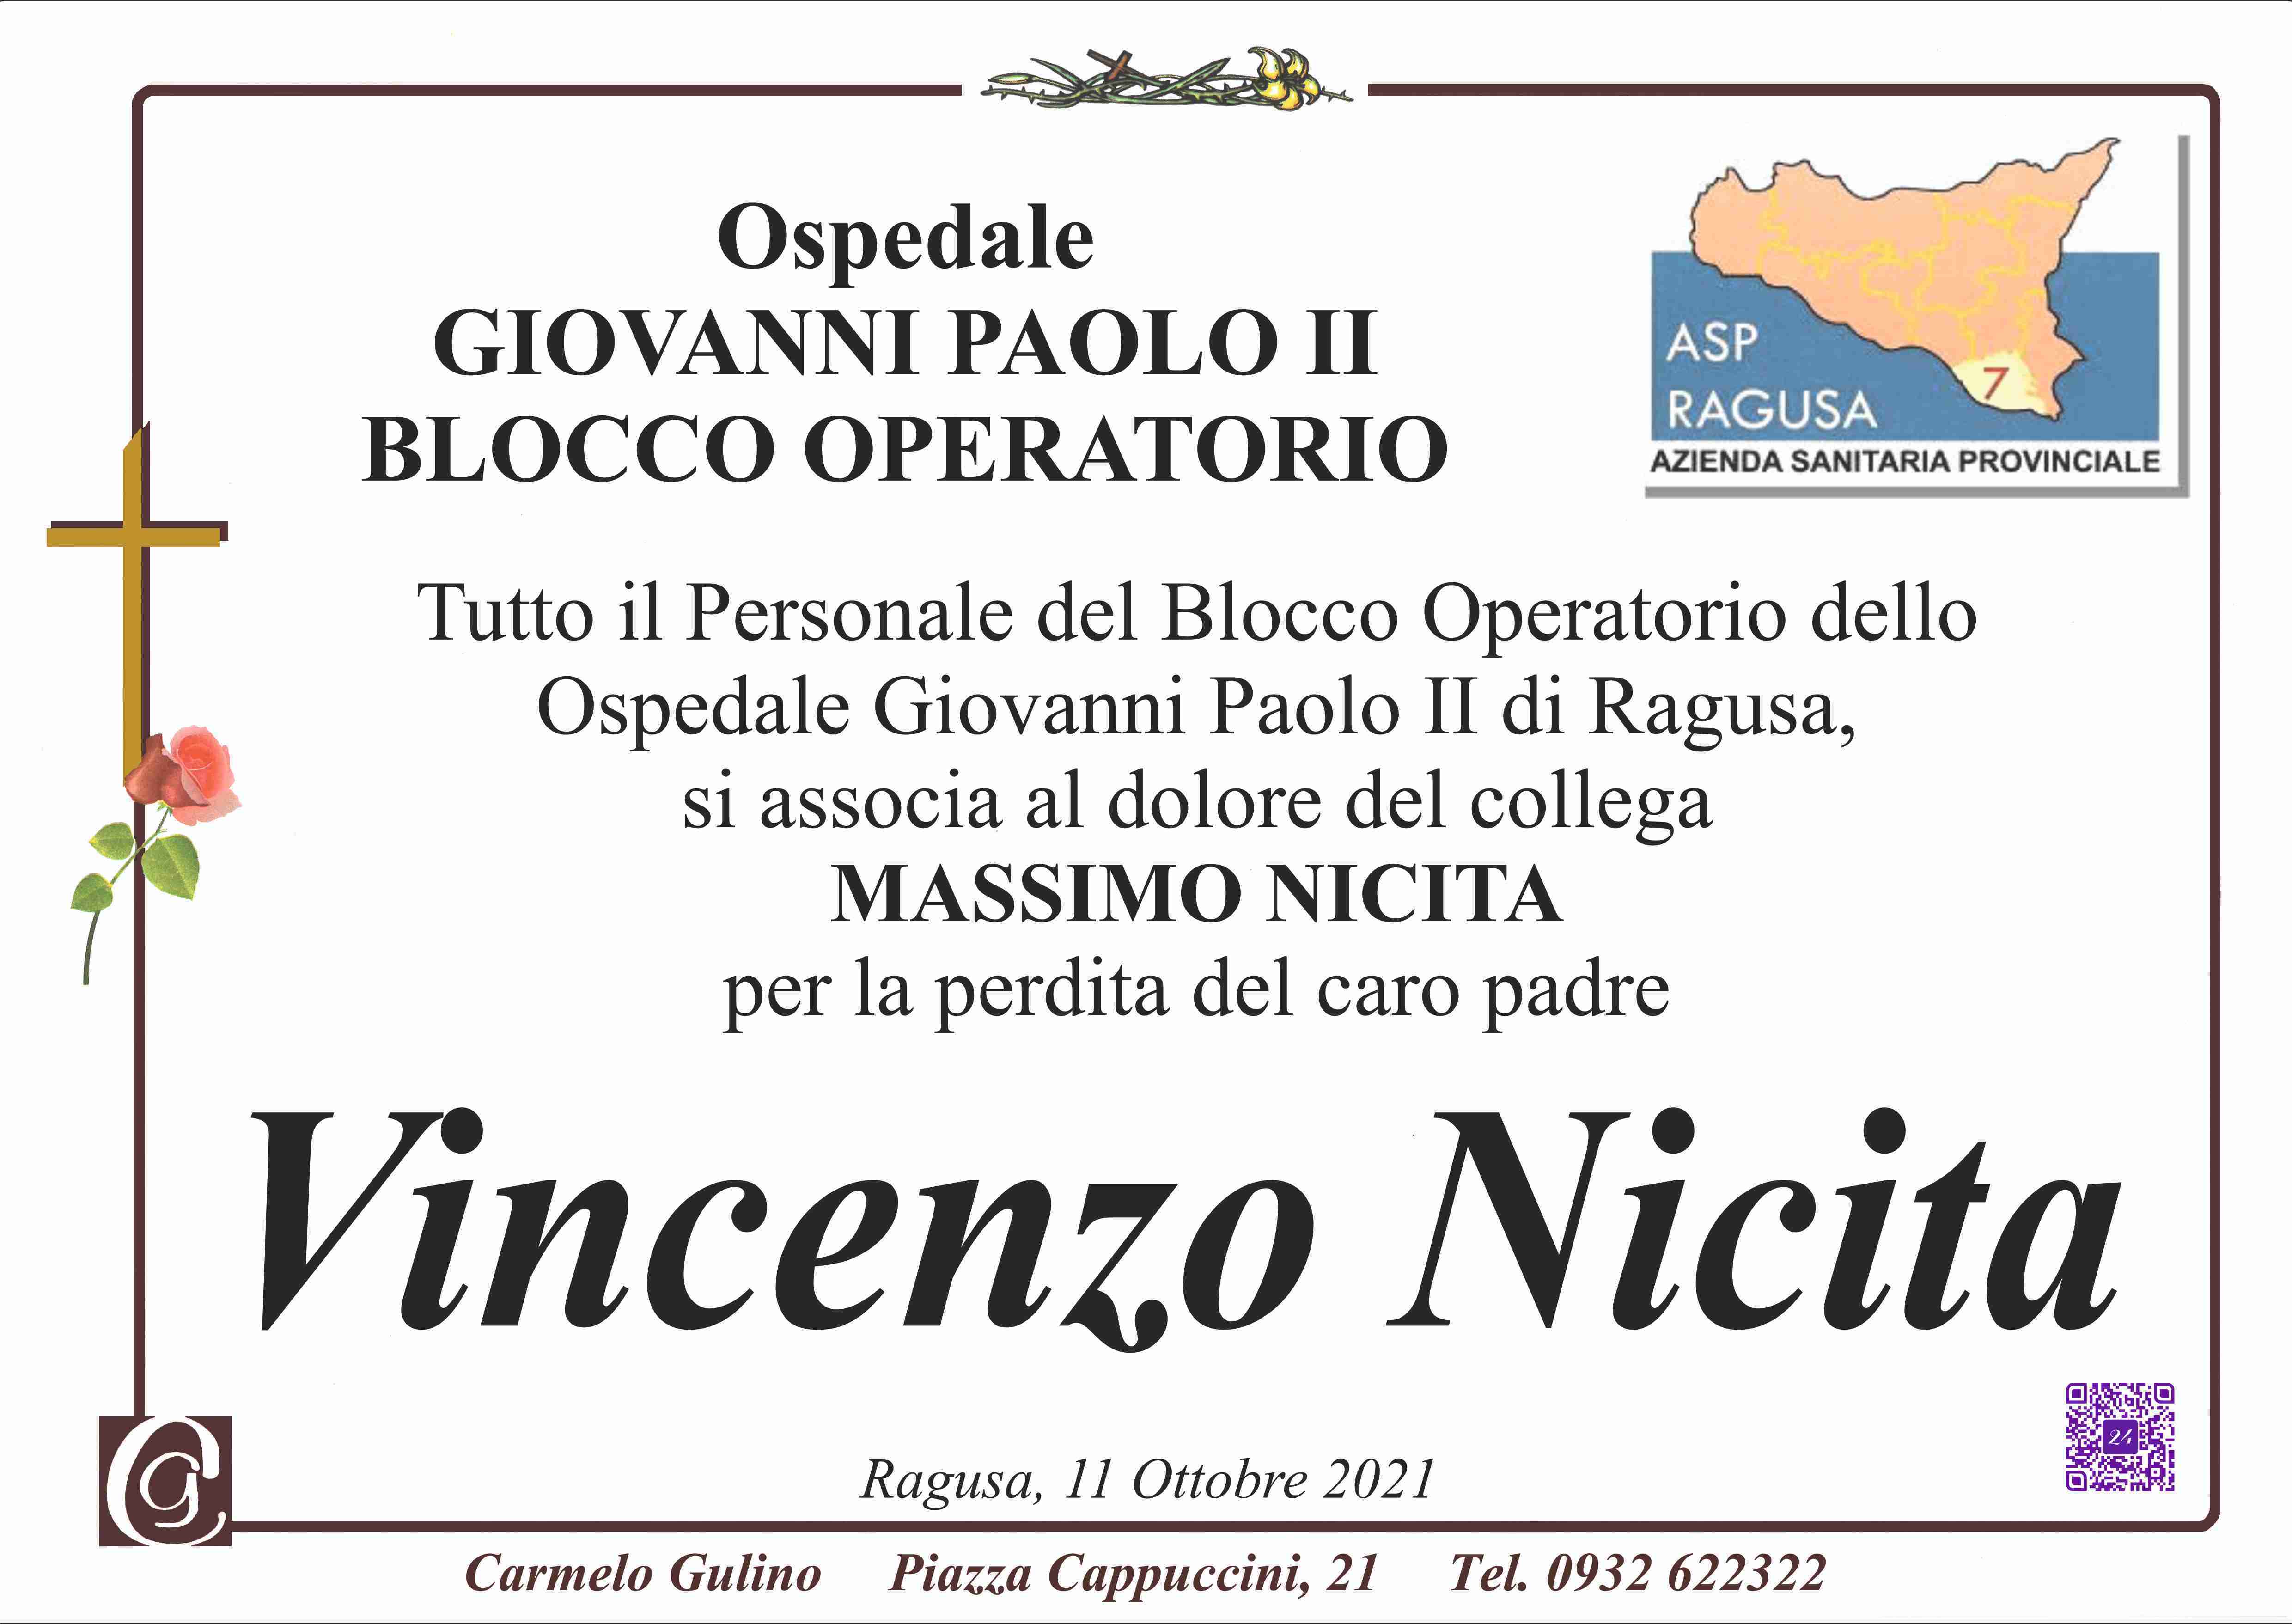 Vincenzo Nicita